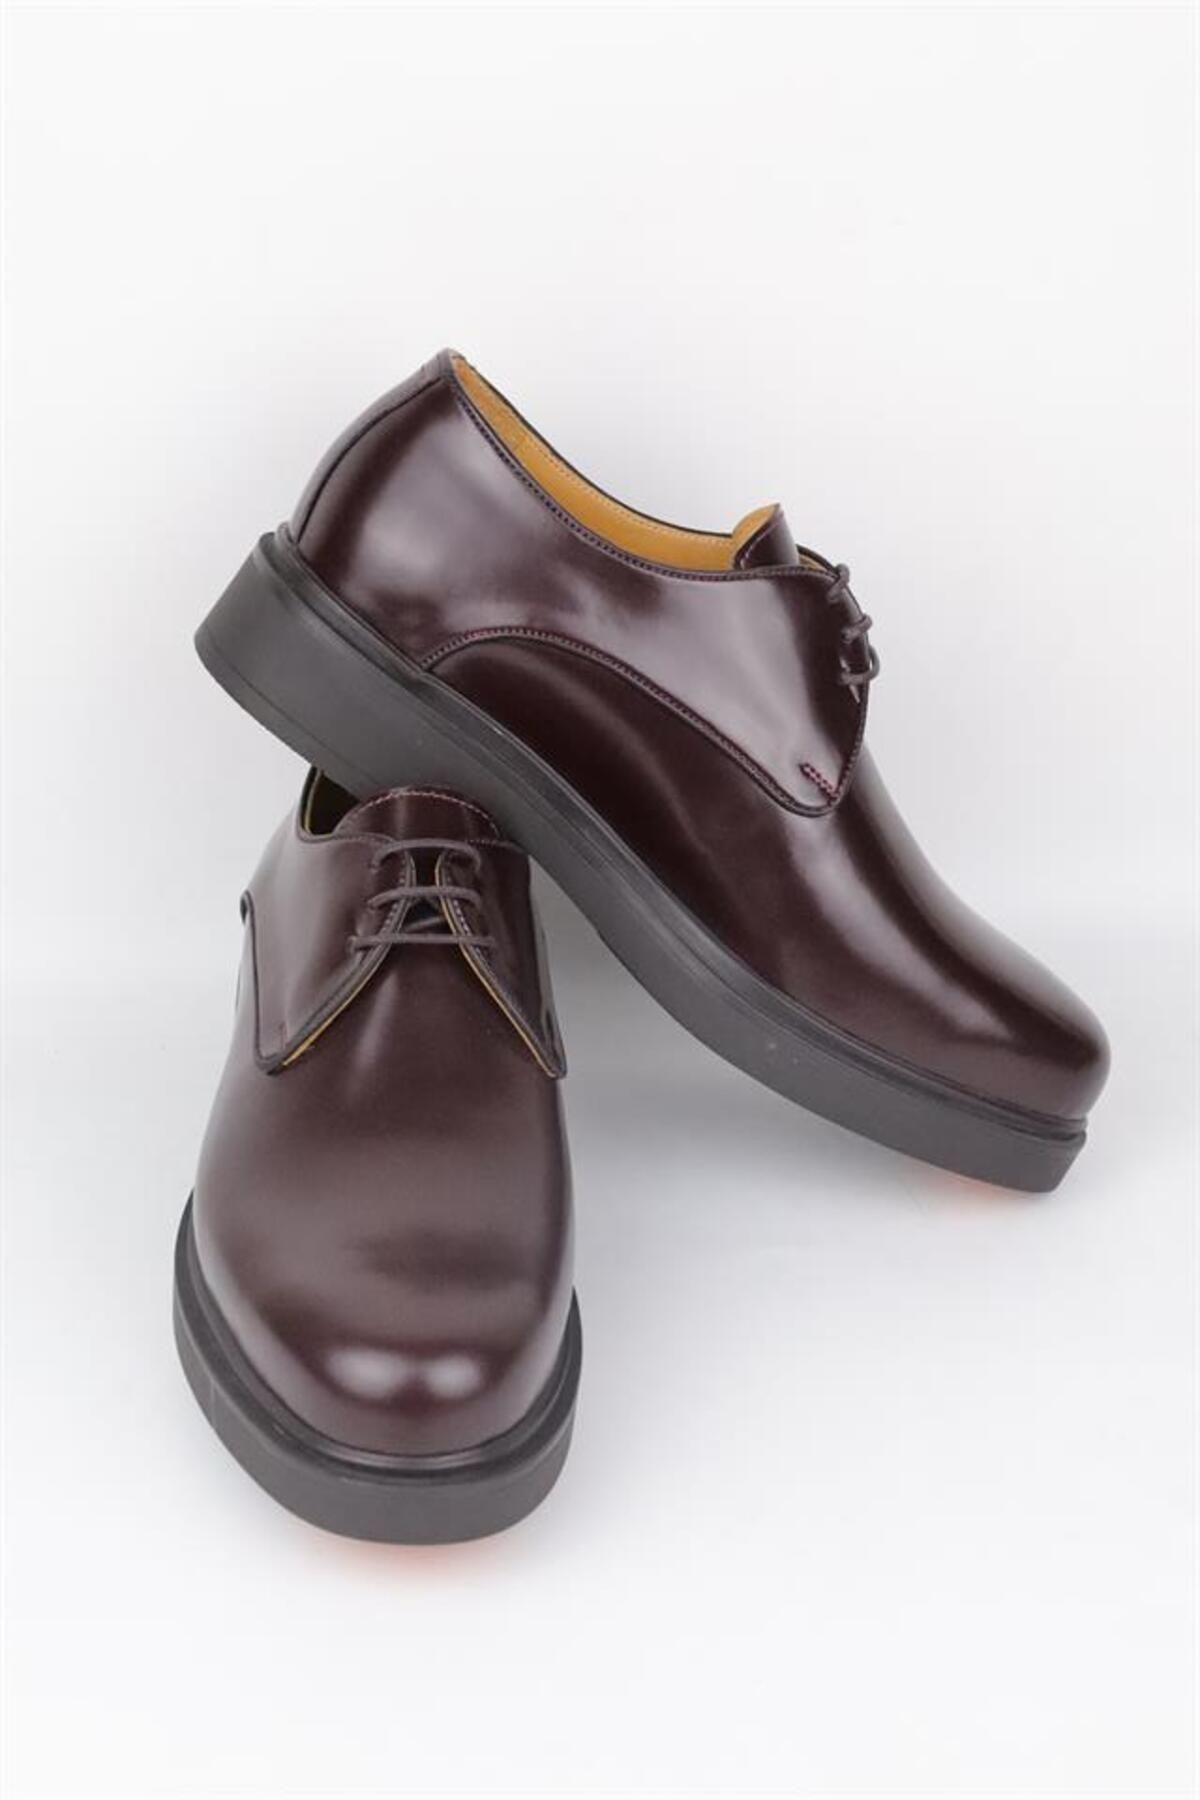 HARRY MANSON Model 077 Hakiki Açma Deri Erkek Günlük Ayakkabı